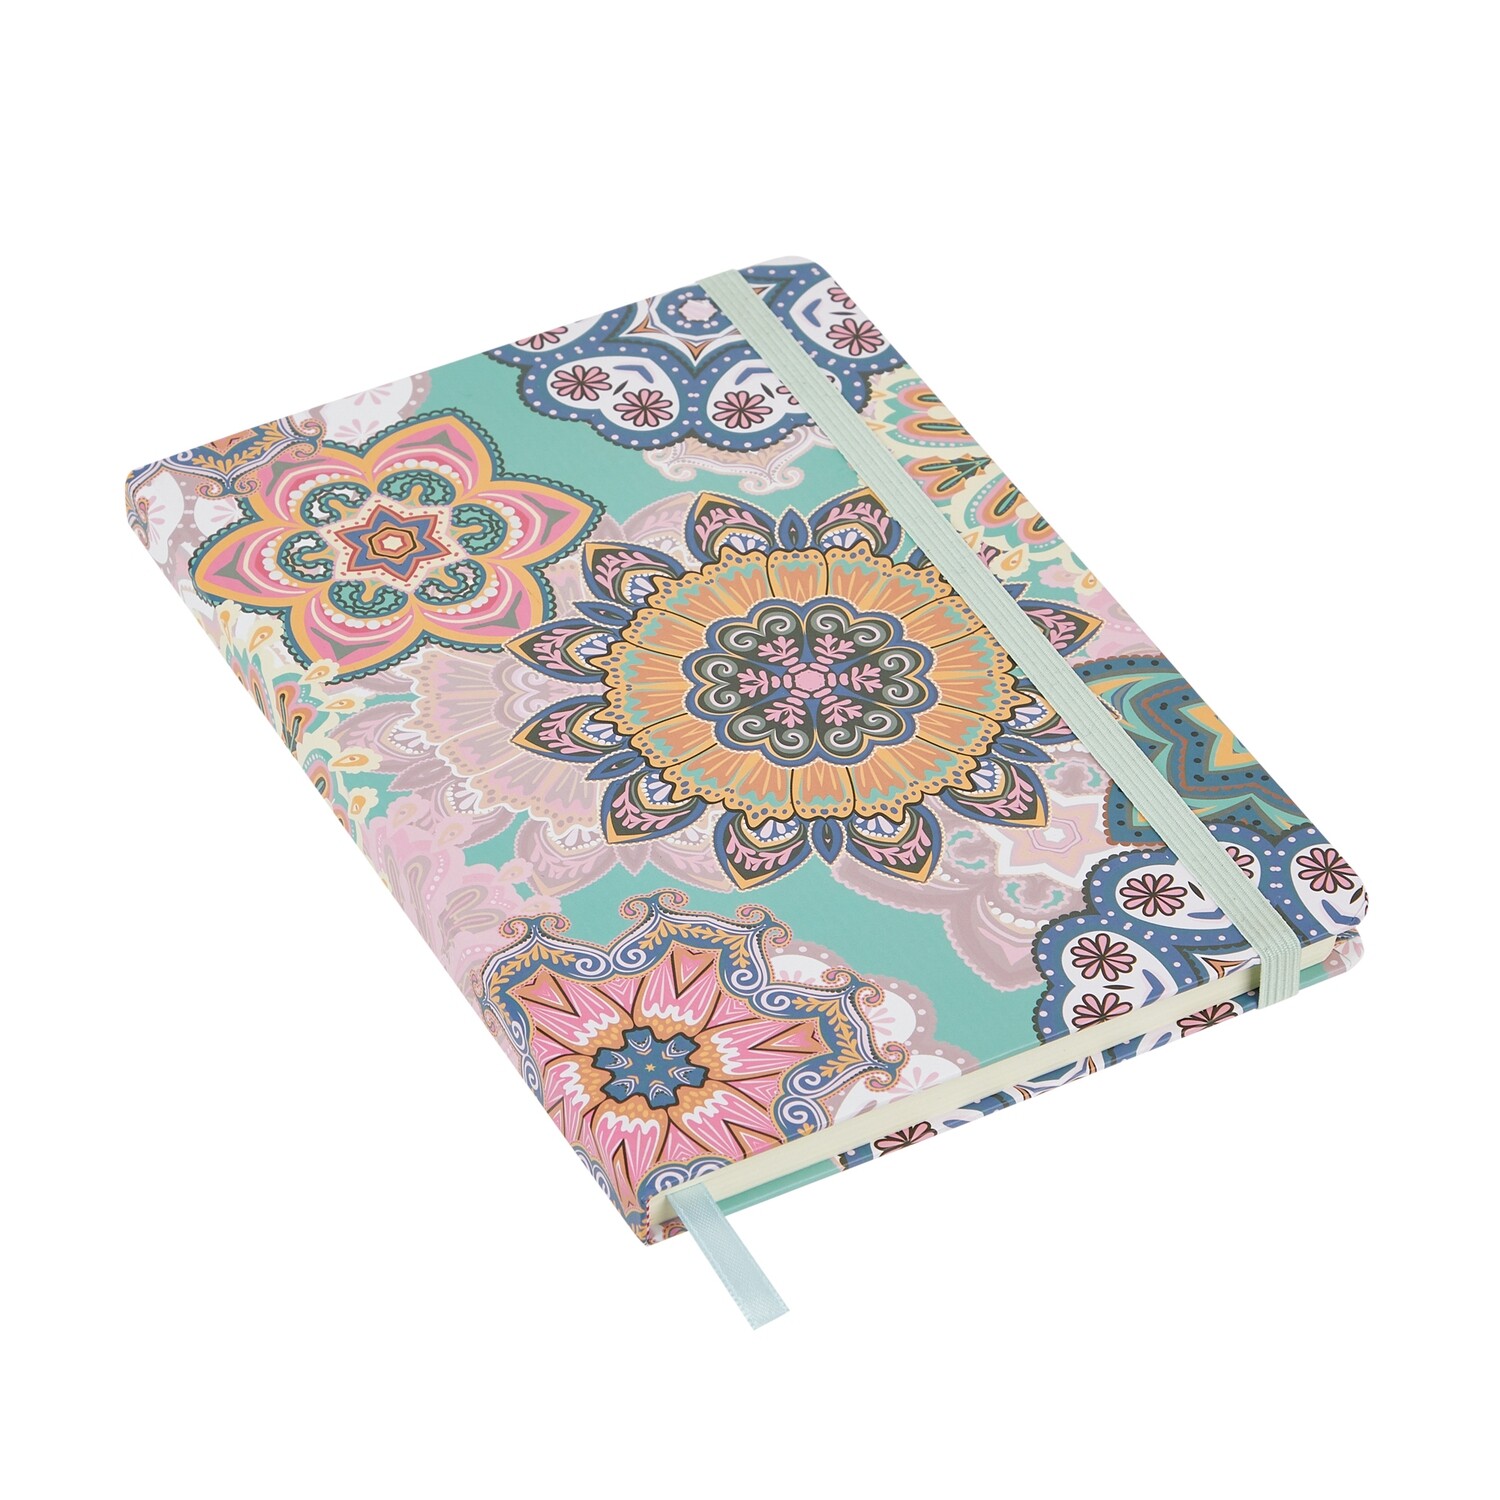 Rangoli - Hardbound Lined Journal A5 Notebook